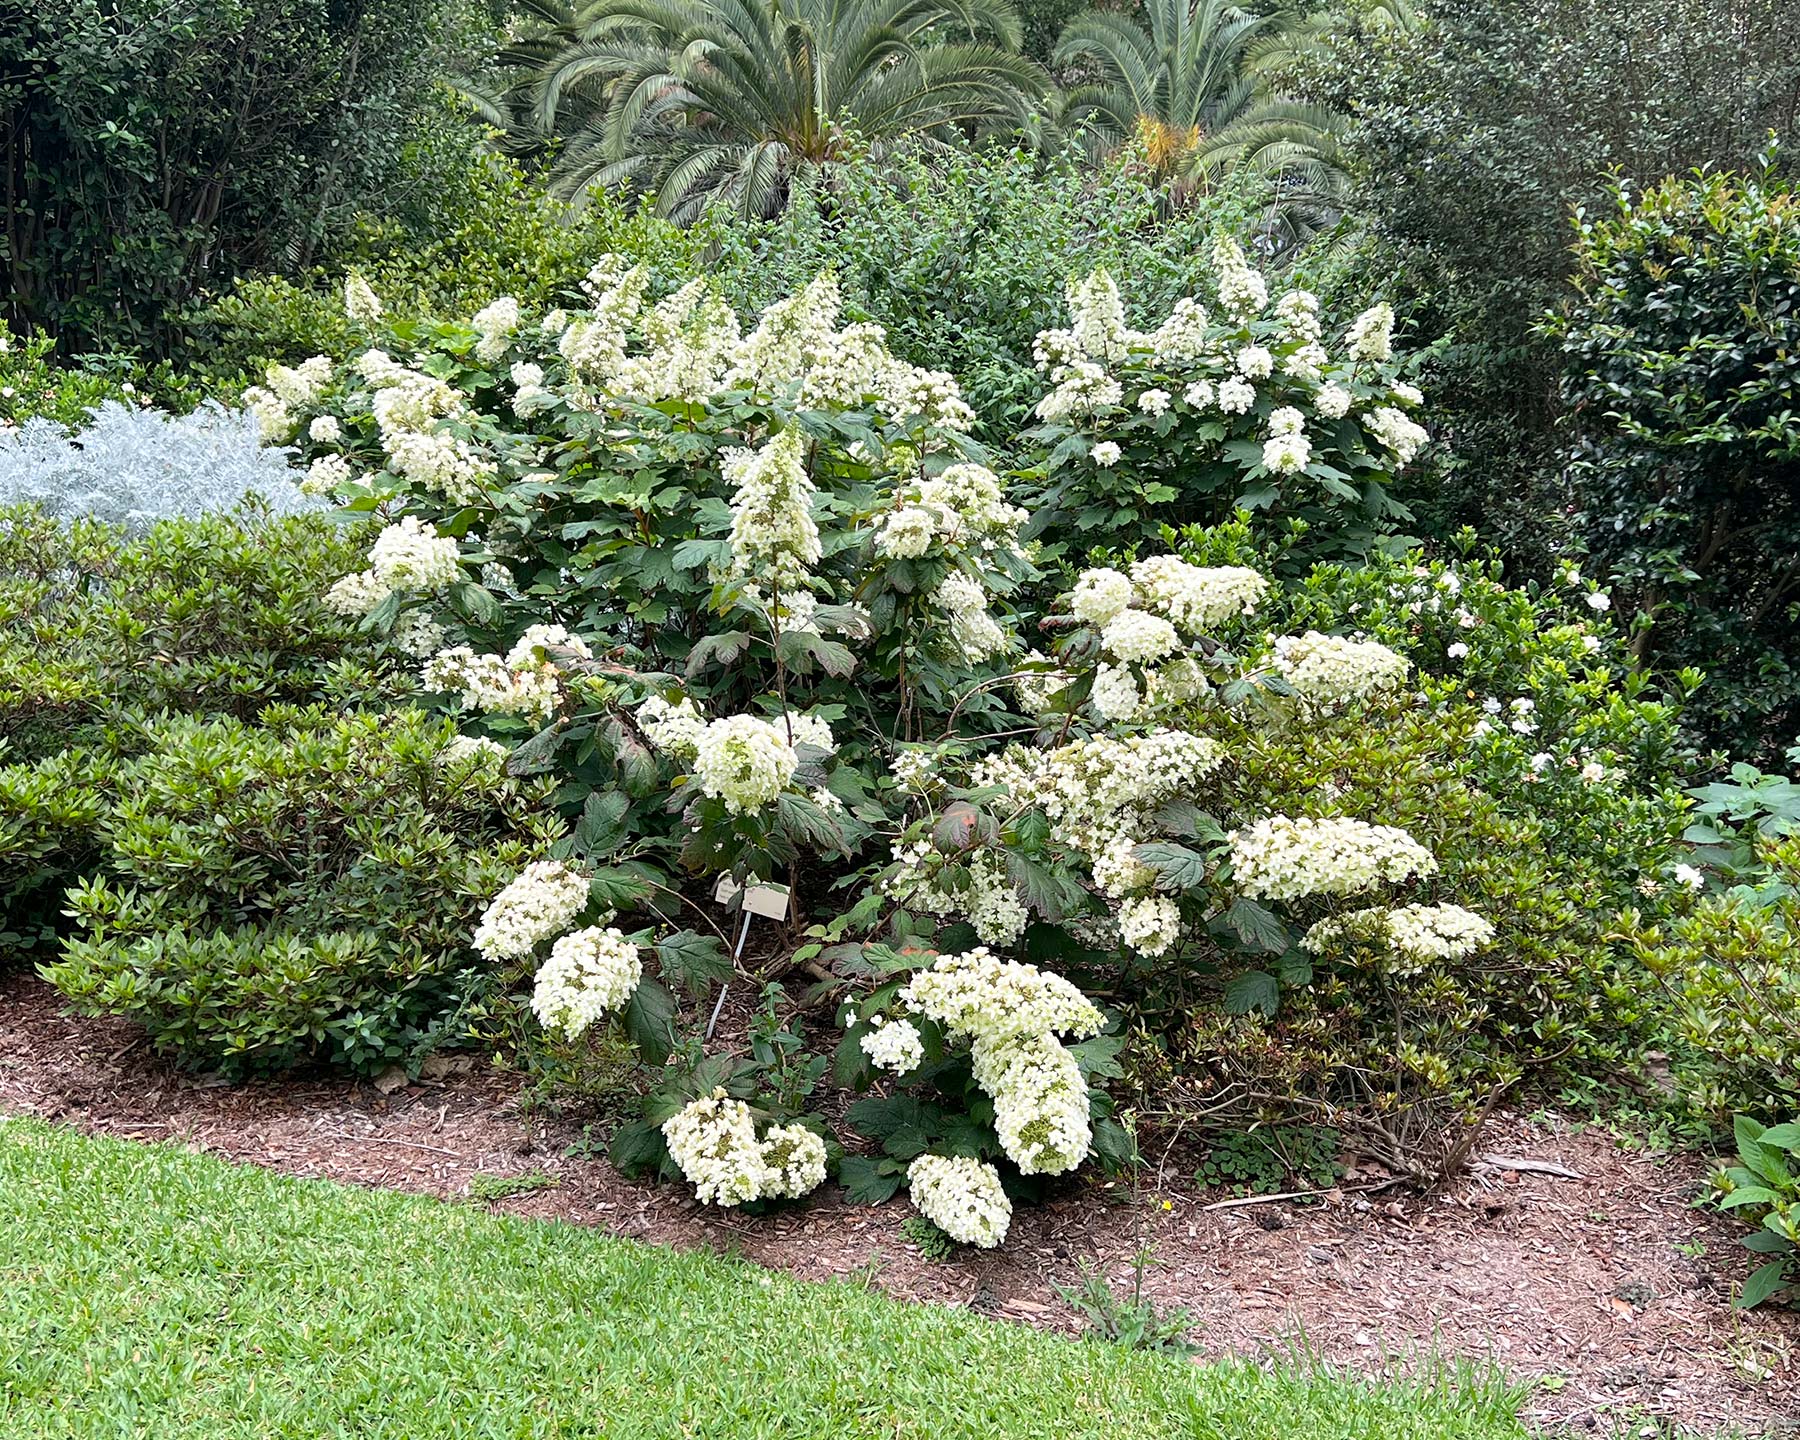 Hydrangea quercifolia - Oak leaved Hydrangea growing in Sydney Botanic Gardens